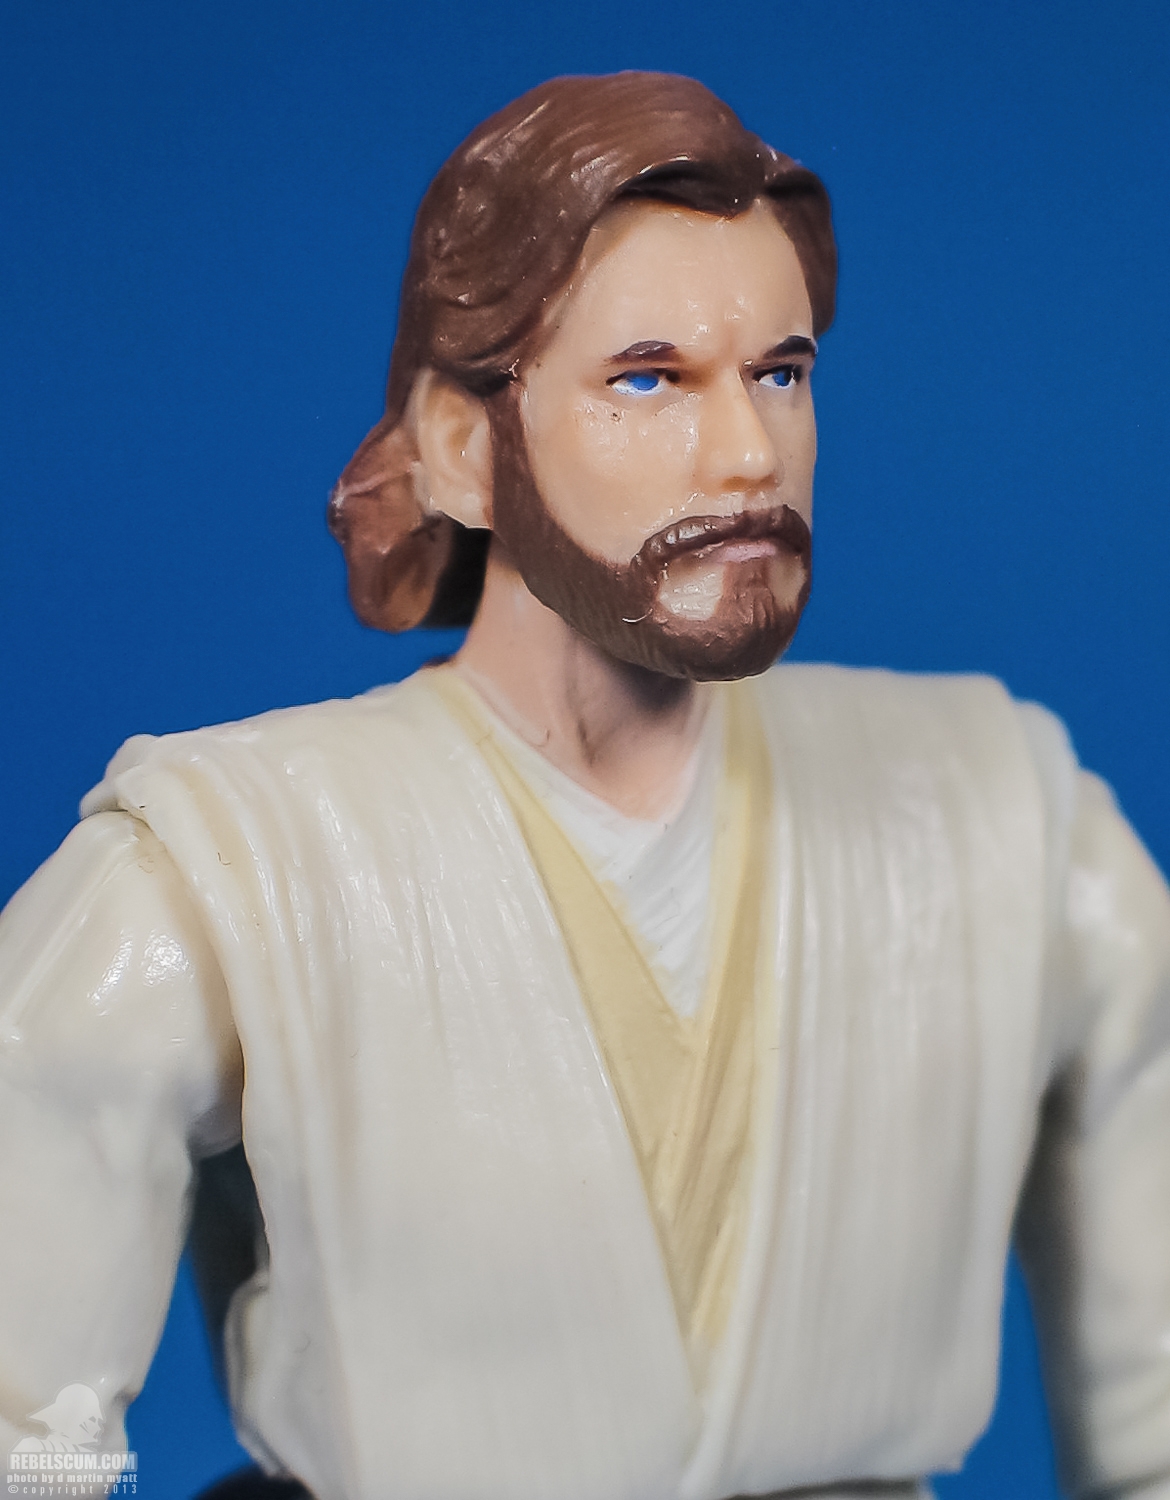 Obi-Wan_Kenobi_AOTC_Vintage_Collection_TVC_VC31-10.jpg